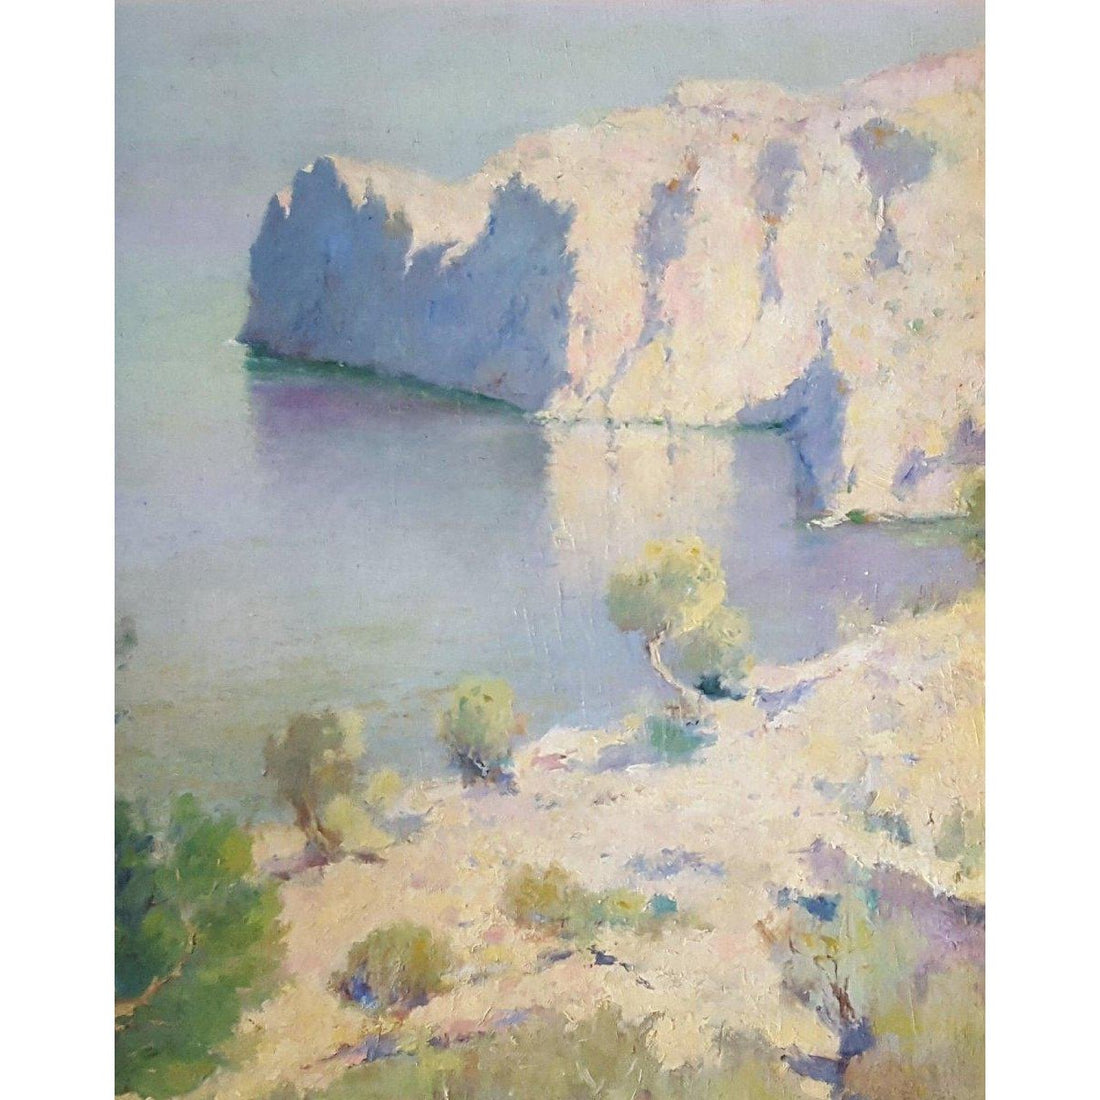 Tito Cittadini (attributed) - Majorca Coastline - Circa 1935 - Winckelmann Gallery